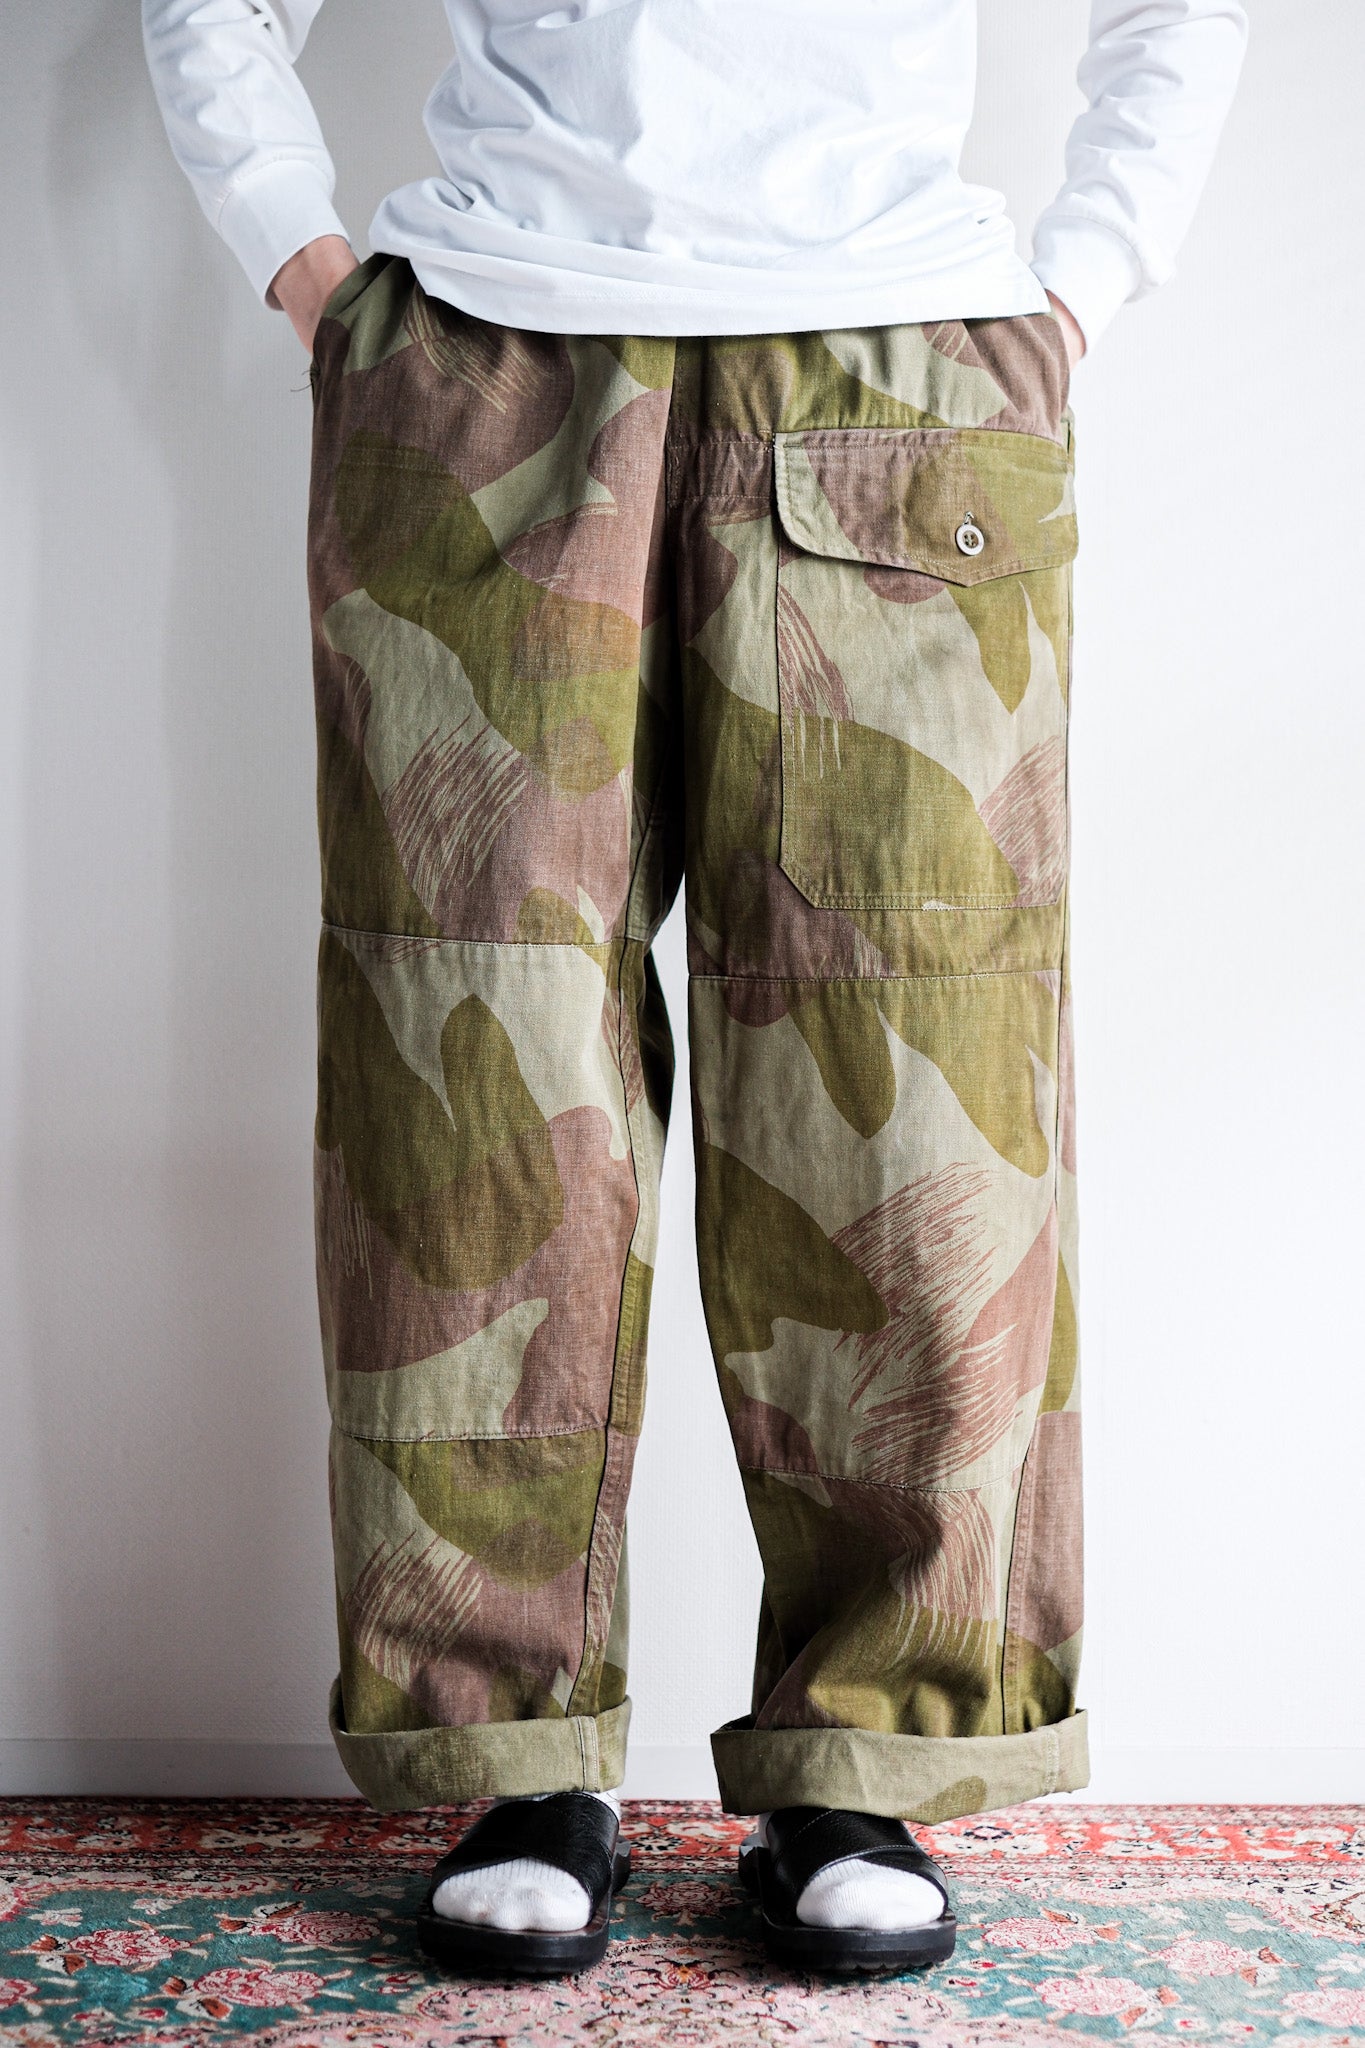 [〜50年代]比利時陸軍筆觸偽裝機載褲子尺寸。6“重製”“早期類型”